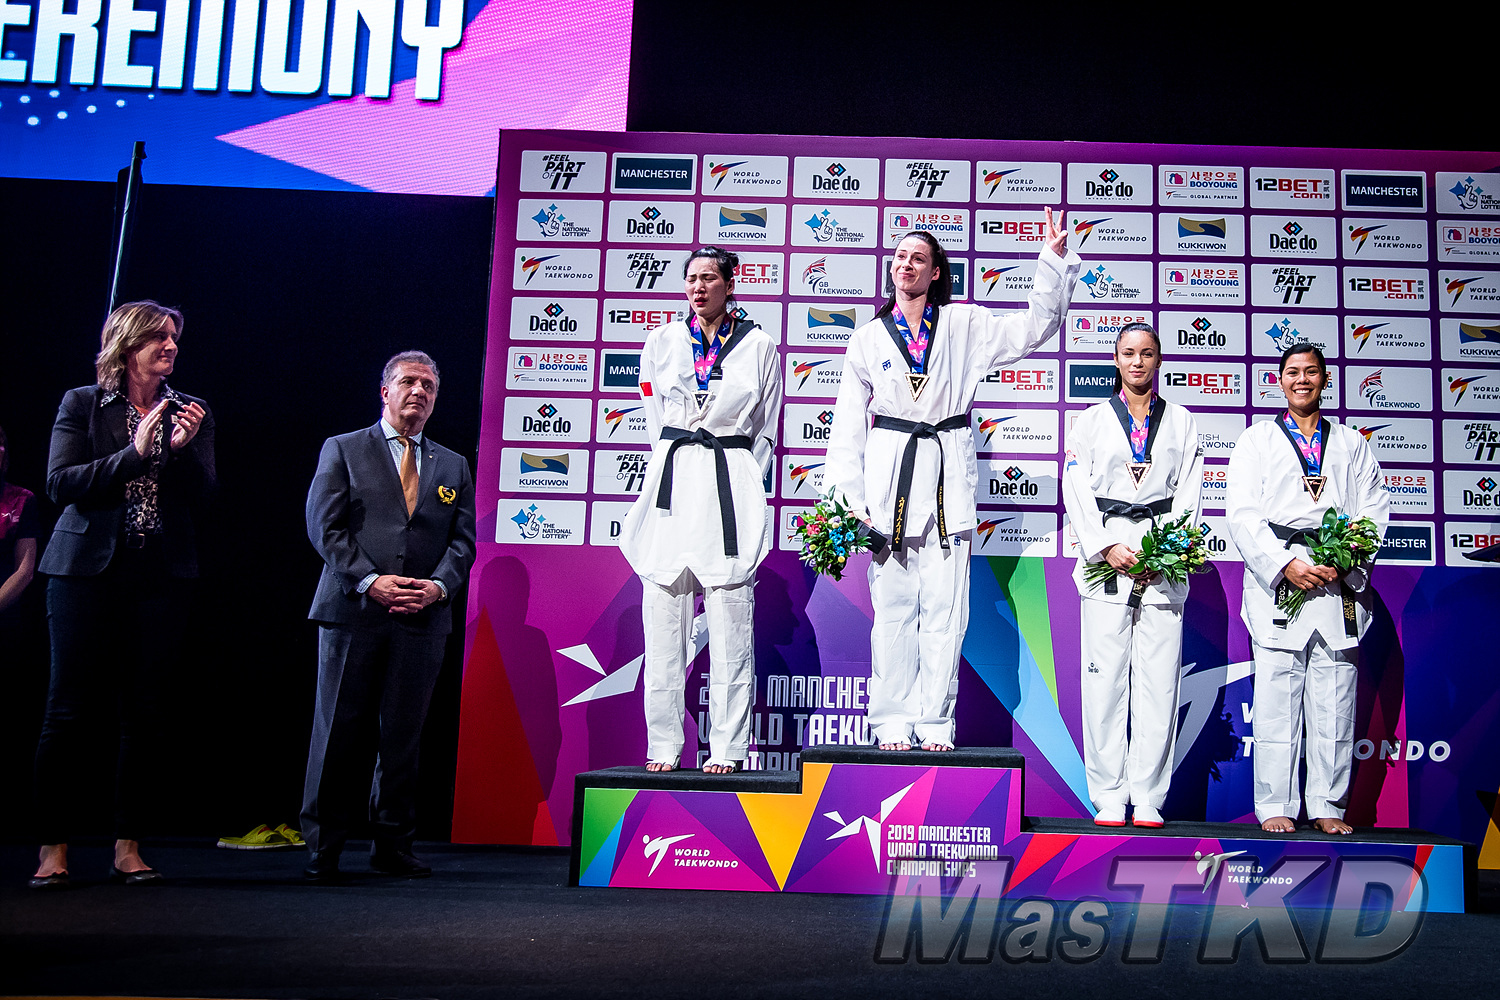 Podium_Fo73_Manchester-2019-World-Taekwondo-Championships_mT